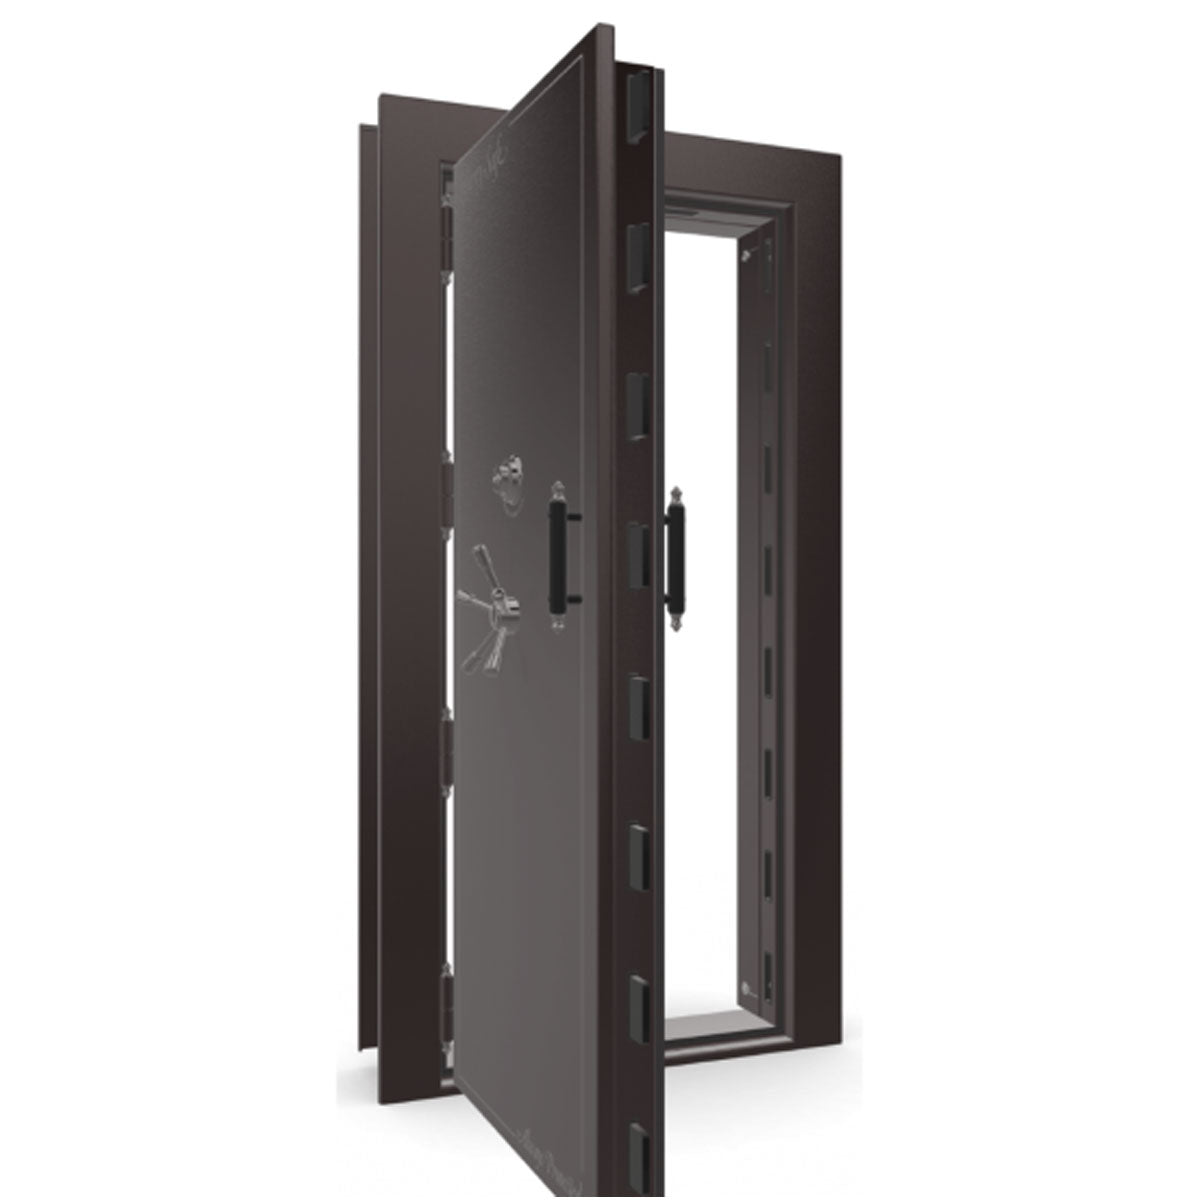 The Beast Vault Door in Black Cherry Gloss with Black Chrome Electronic Lock, Left Outswing, door open.